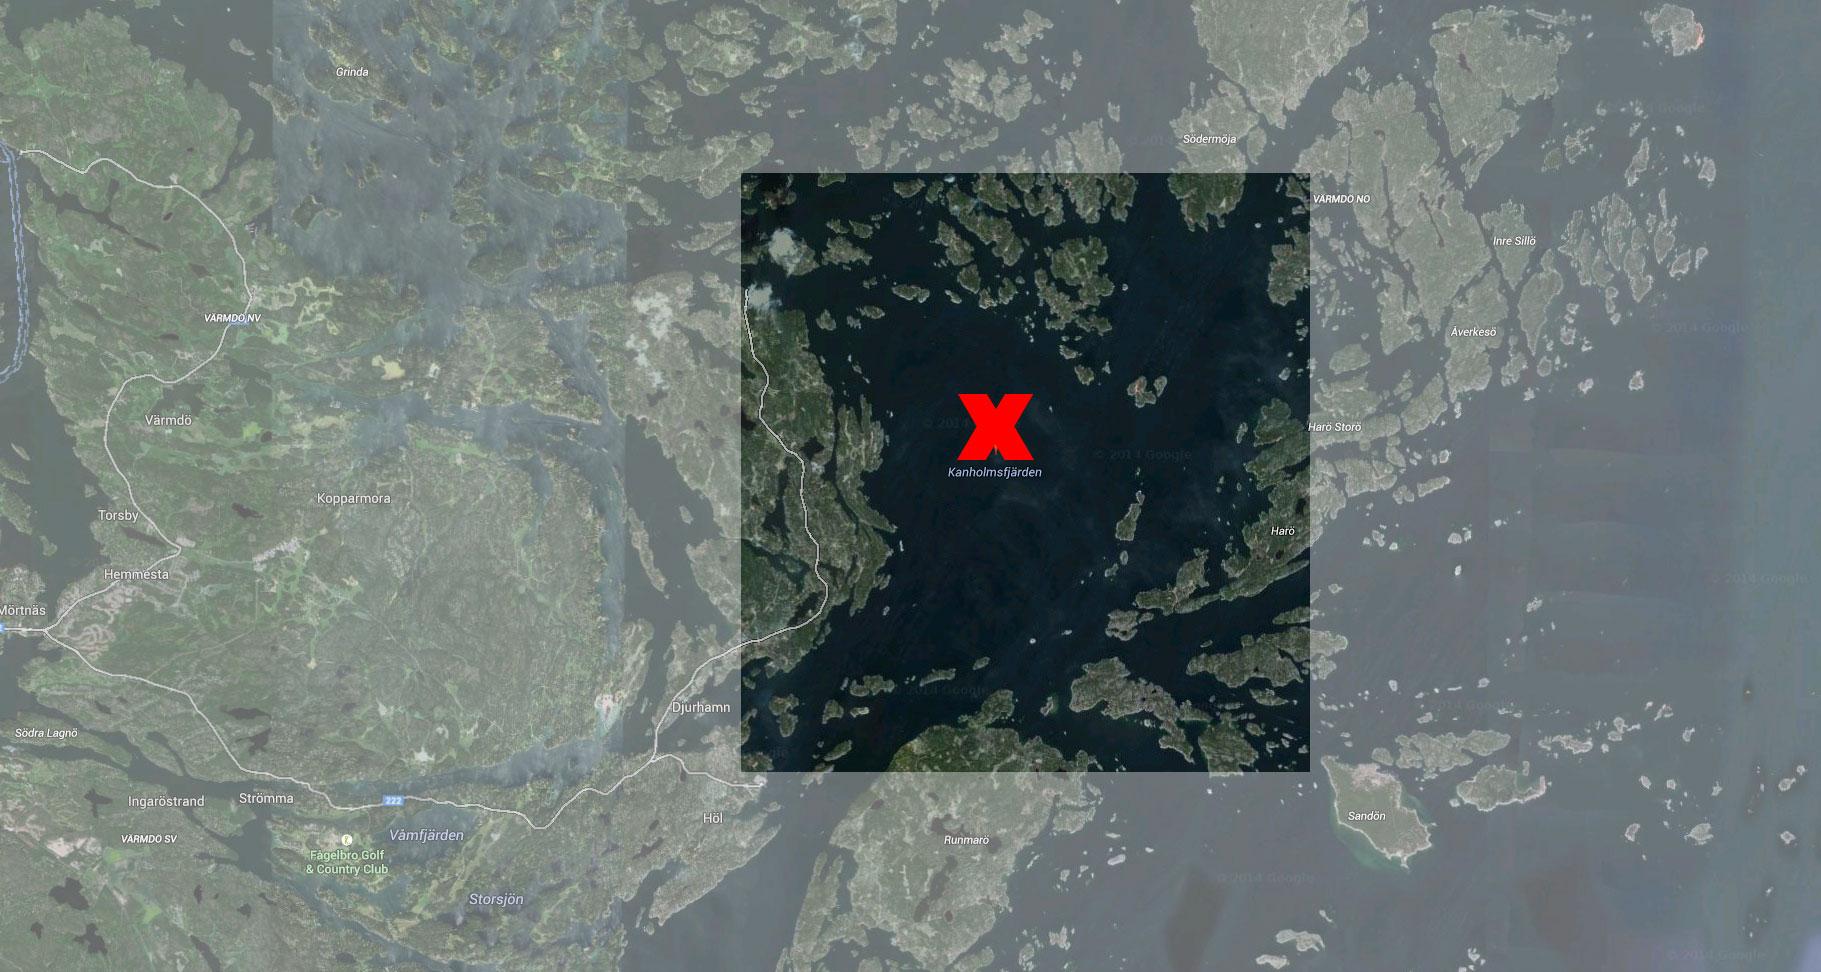 I området i och kring Kanholmsfjärden i Stockholms skärgård pågår marinens underrättelseoperation.